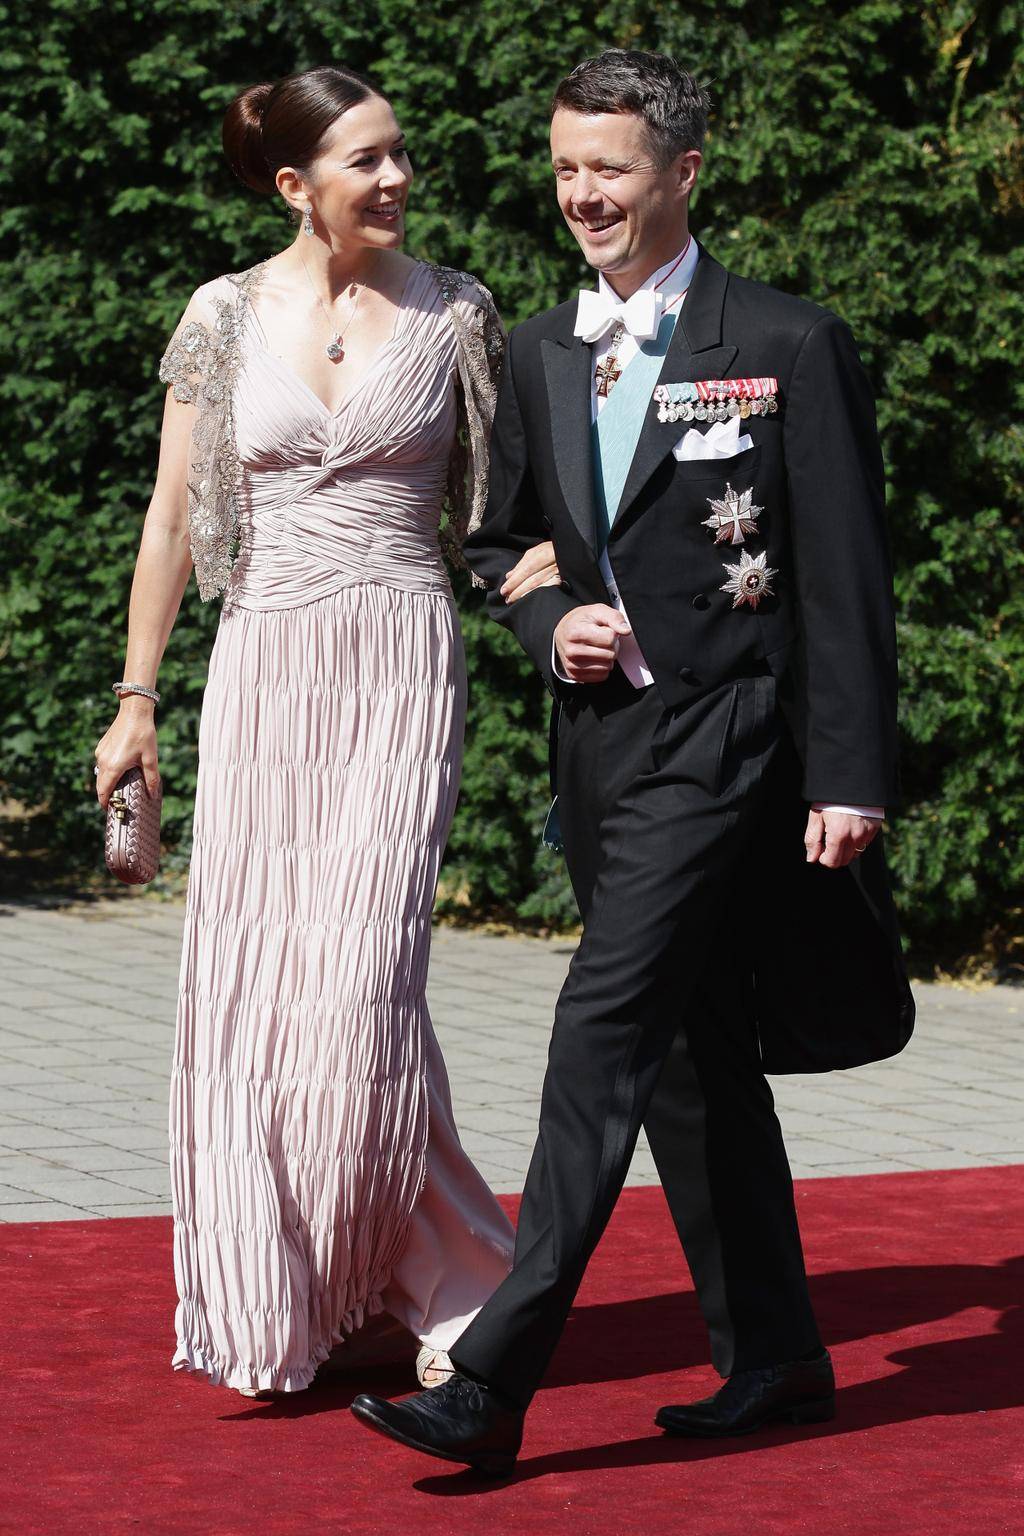 Maria, księżna koronna Danii, i Fryderyk, książę koronny Danii, na ślubie księżnej Nathalie zu Sayn-Wittgenstein-Berleburg i Alexandra Johannsmanna w kościele ewangelickim w Bad Berleburgu w Niemczech, 18 czerwca 2011 roku.